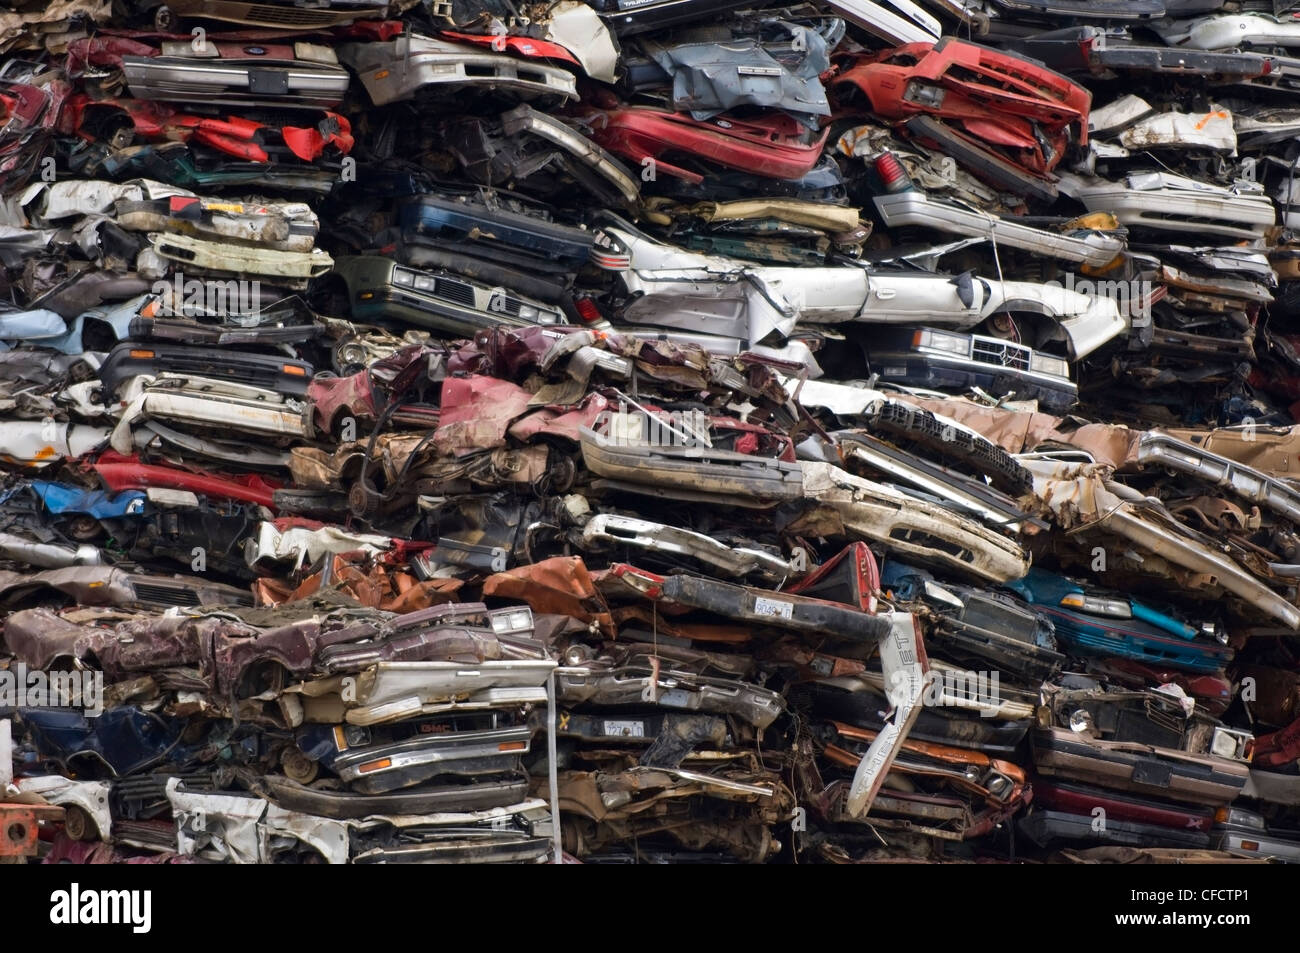 Des piles de voitures obsolètes au chantier de recyclage, l'île de Vancouver, Colombie-Britannique, Canada Banque D'Images